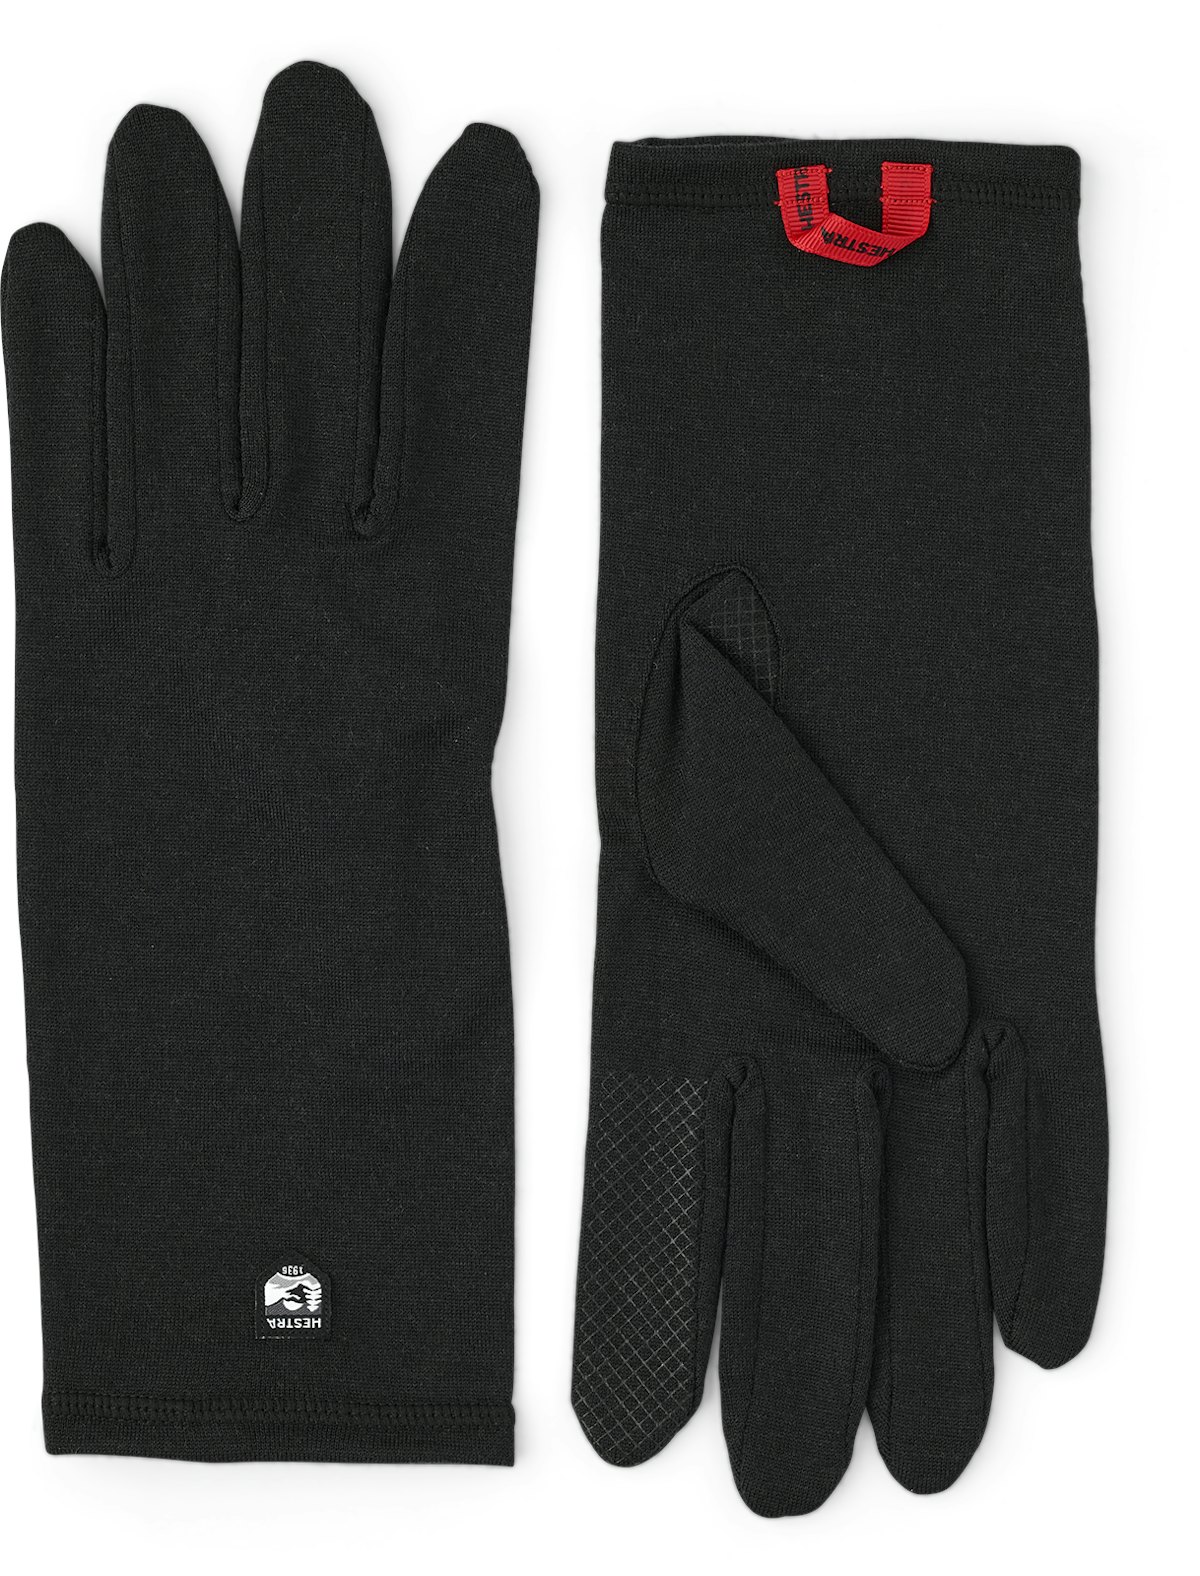 Merino Wool Liner Long 5-finger - Black